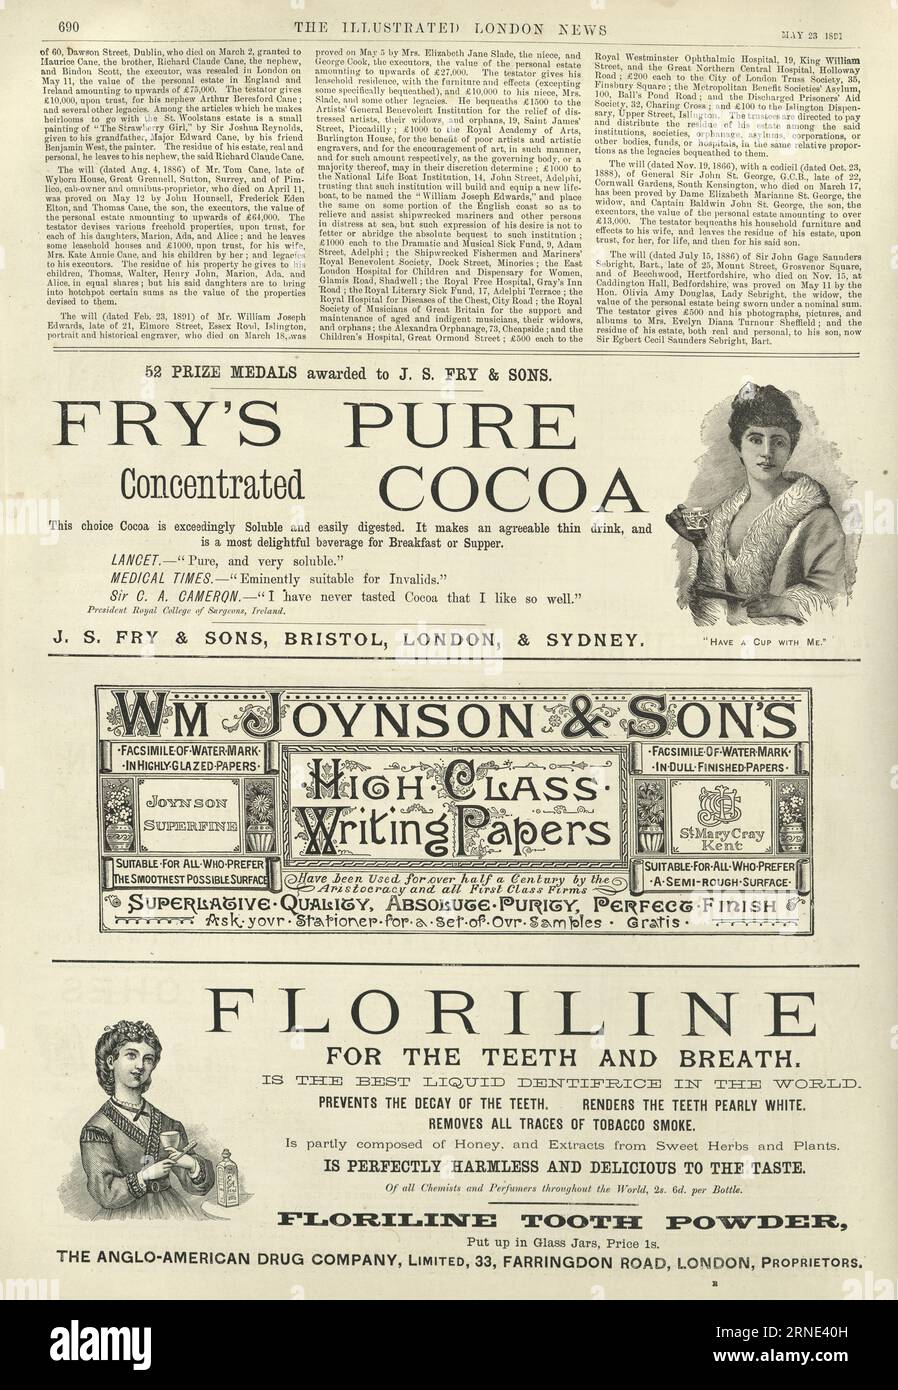 Viktorianische Zeitungsanzeigen, Fry's Pure Cocoa. Schreibpapier, Floriline für Zähne und Atem, 1890er Jahre Stockfoto